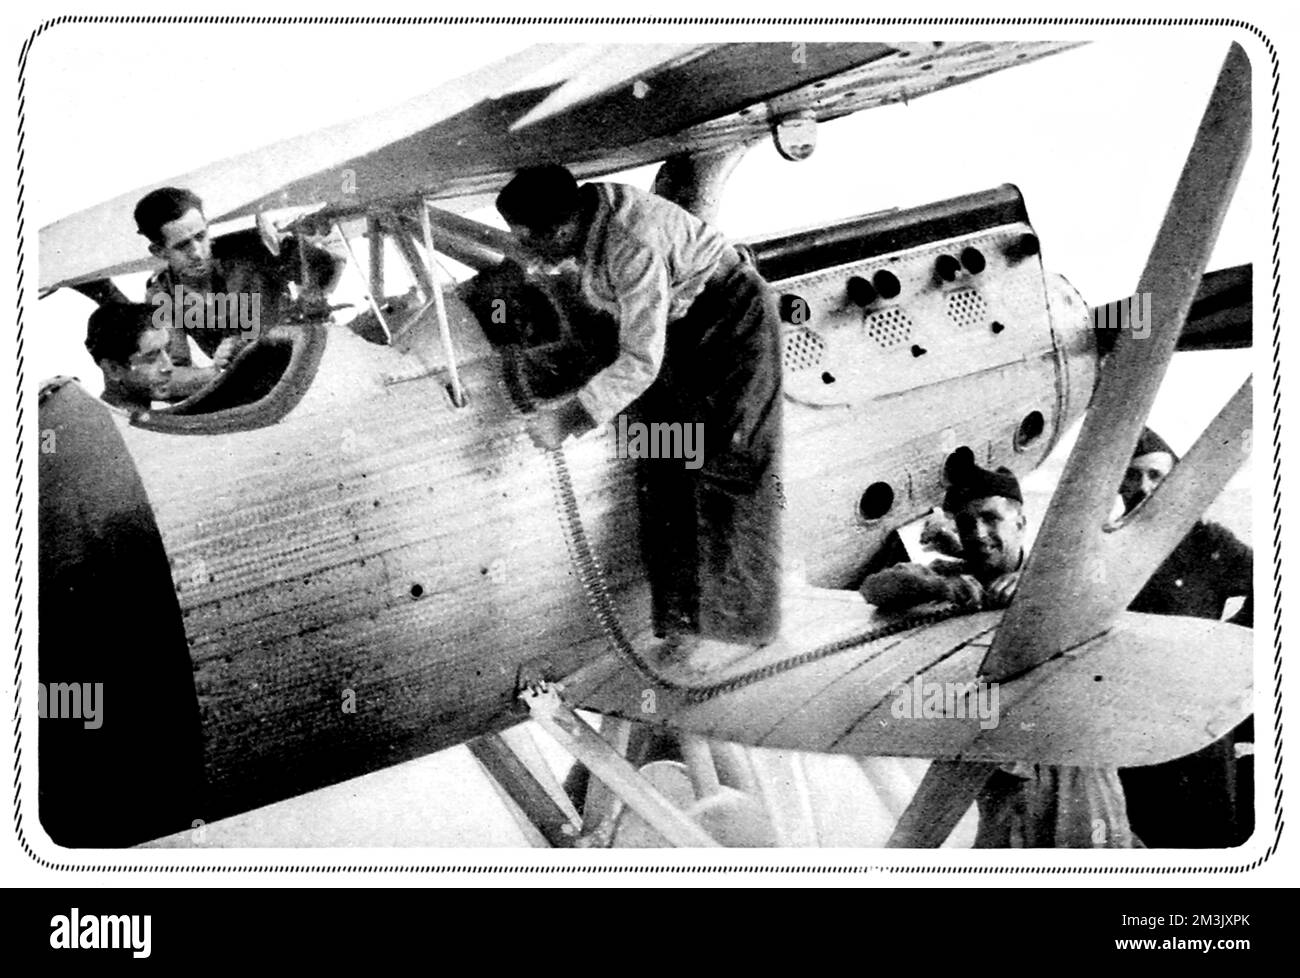 Das Foto zeigt Mitglieder der republikanischen Luftwaffe, die während der frühen Stadien des Bürgerkriegs 1936 Maschinengewehre eines ihrer Doppelflugzeuge in Irun, Nordspanien, beladen. Datum: 1936 Stockfoto